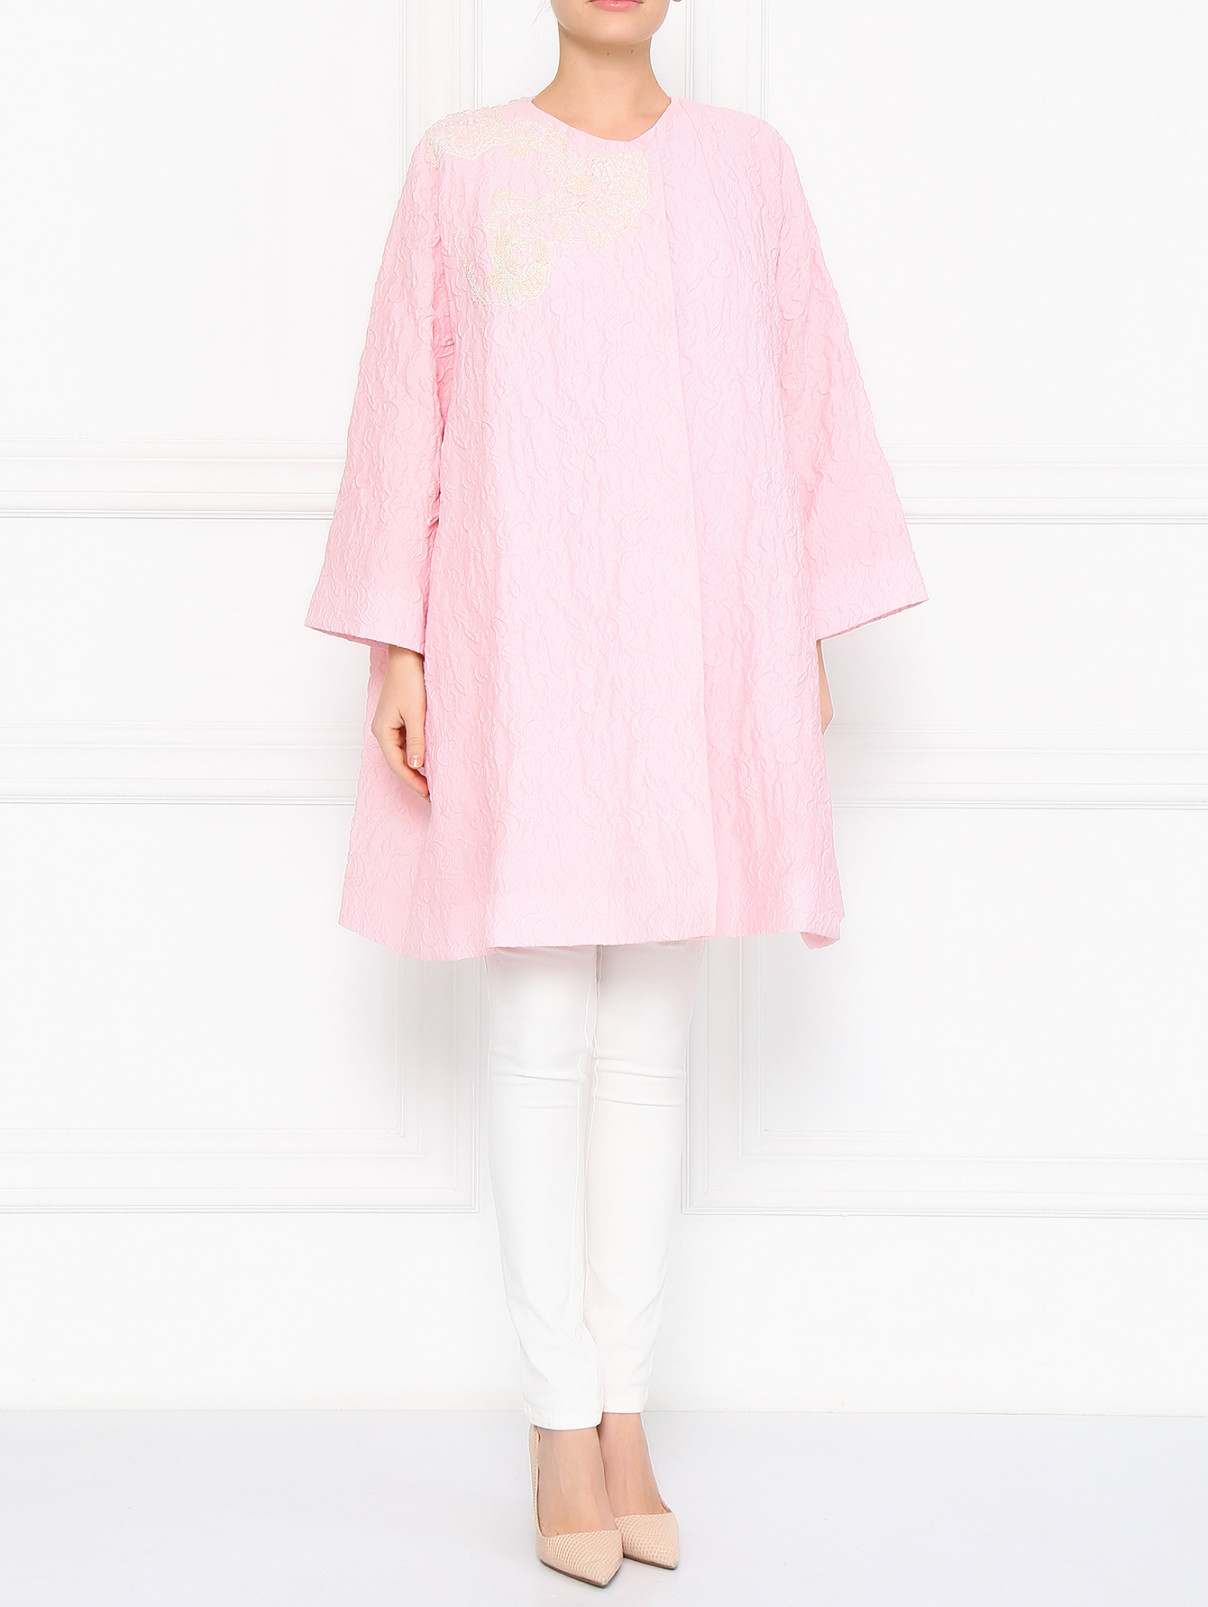 Пальто декорированное бисером Antonio Marras  –  Модель Общий вид  – Цвет:  Розовый